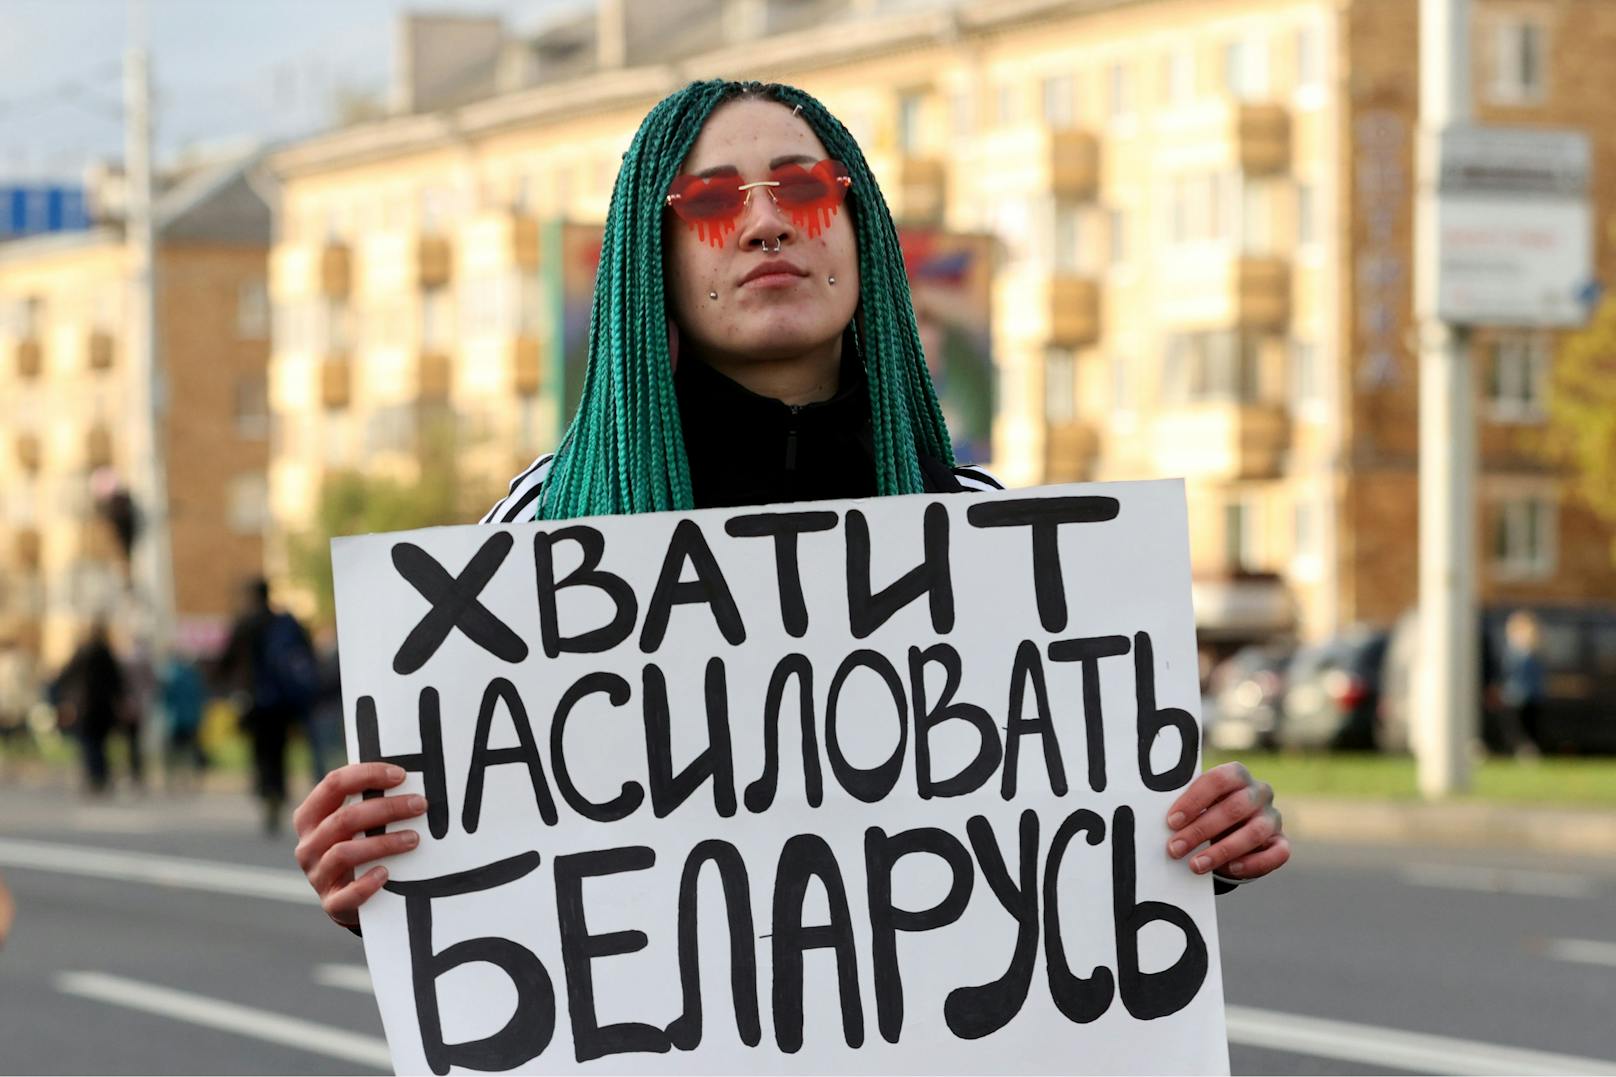 Eine Demonstrantin fordert: "Stoppt die Vergewaltigung von Belarus"